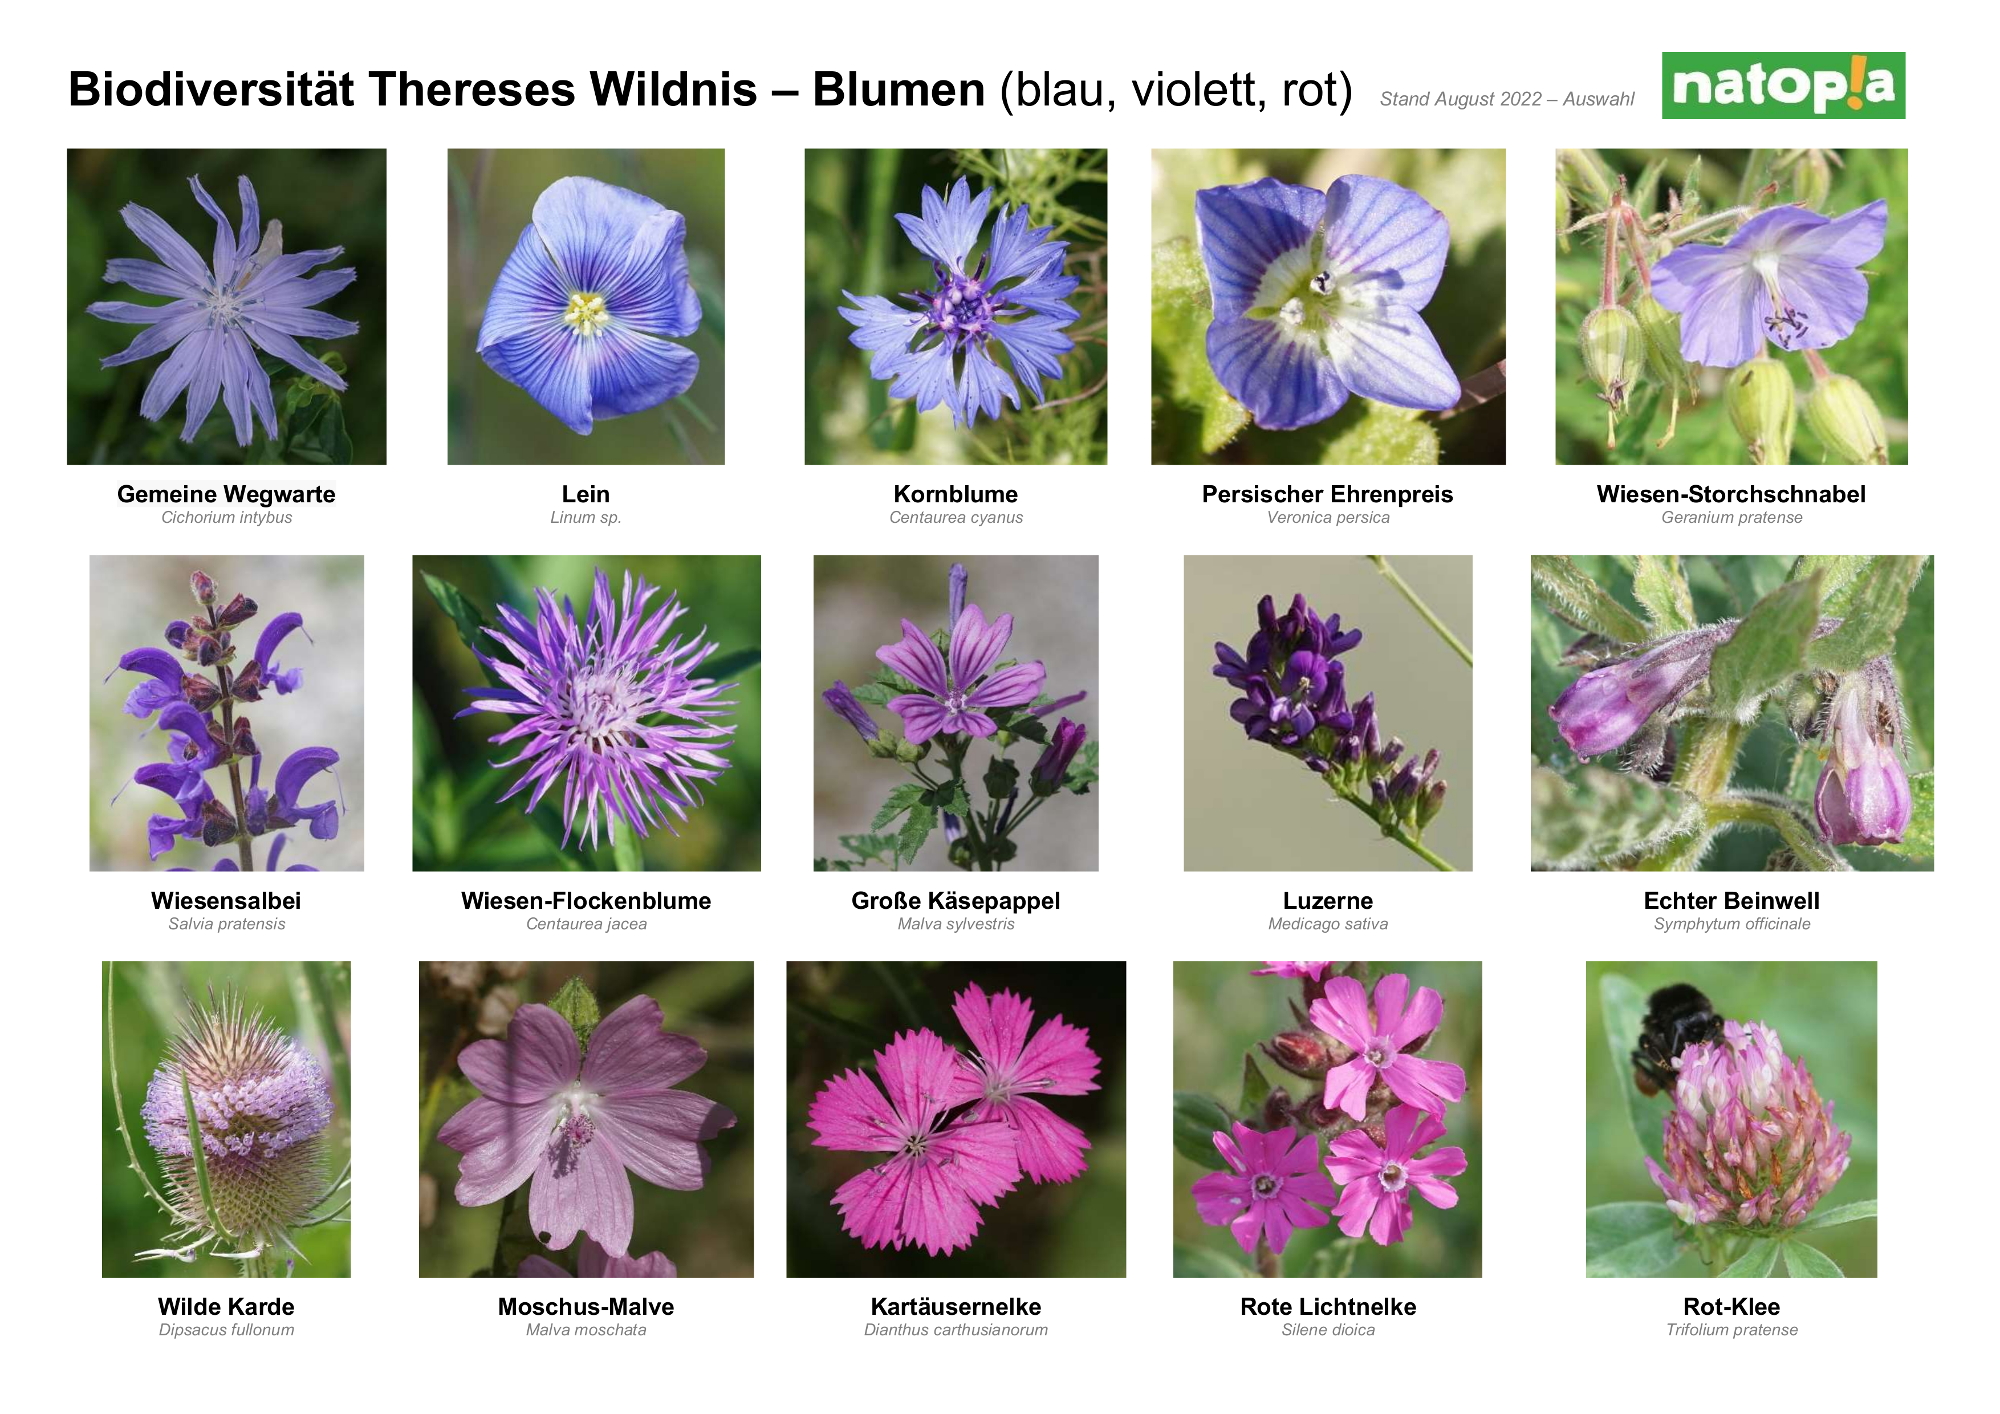 8 Biodiversität Thereses Wildnis Blumen 1 2022 08 15